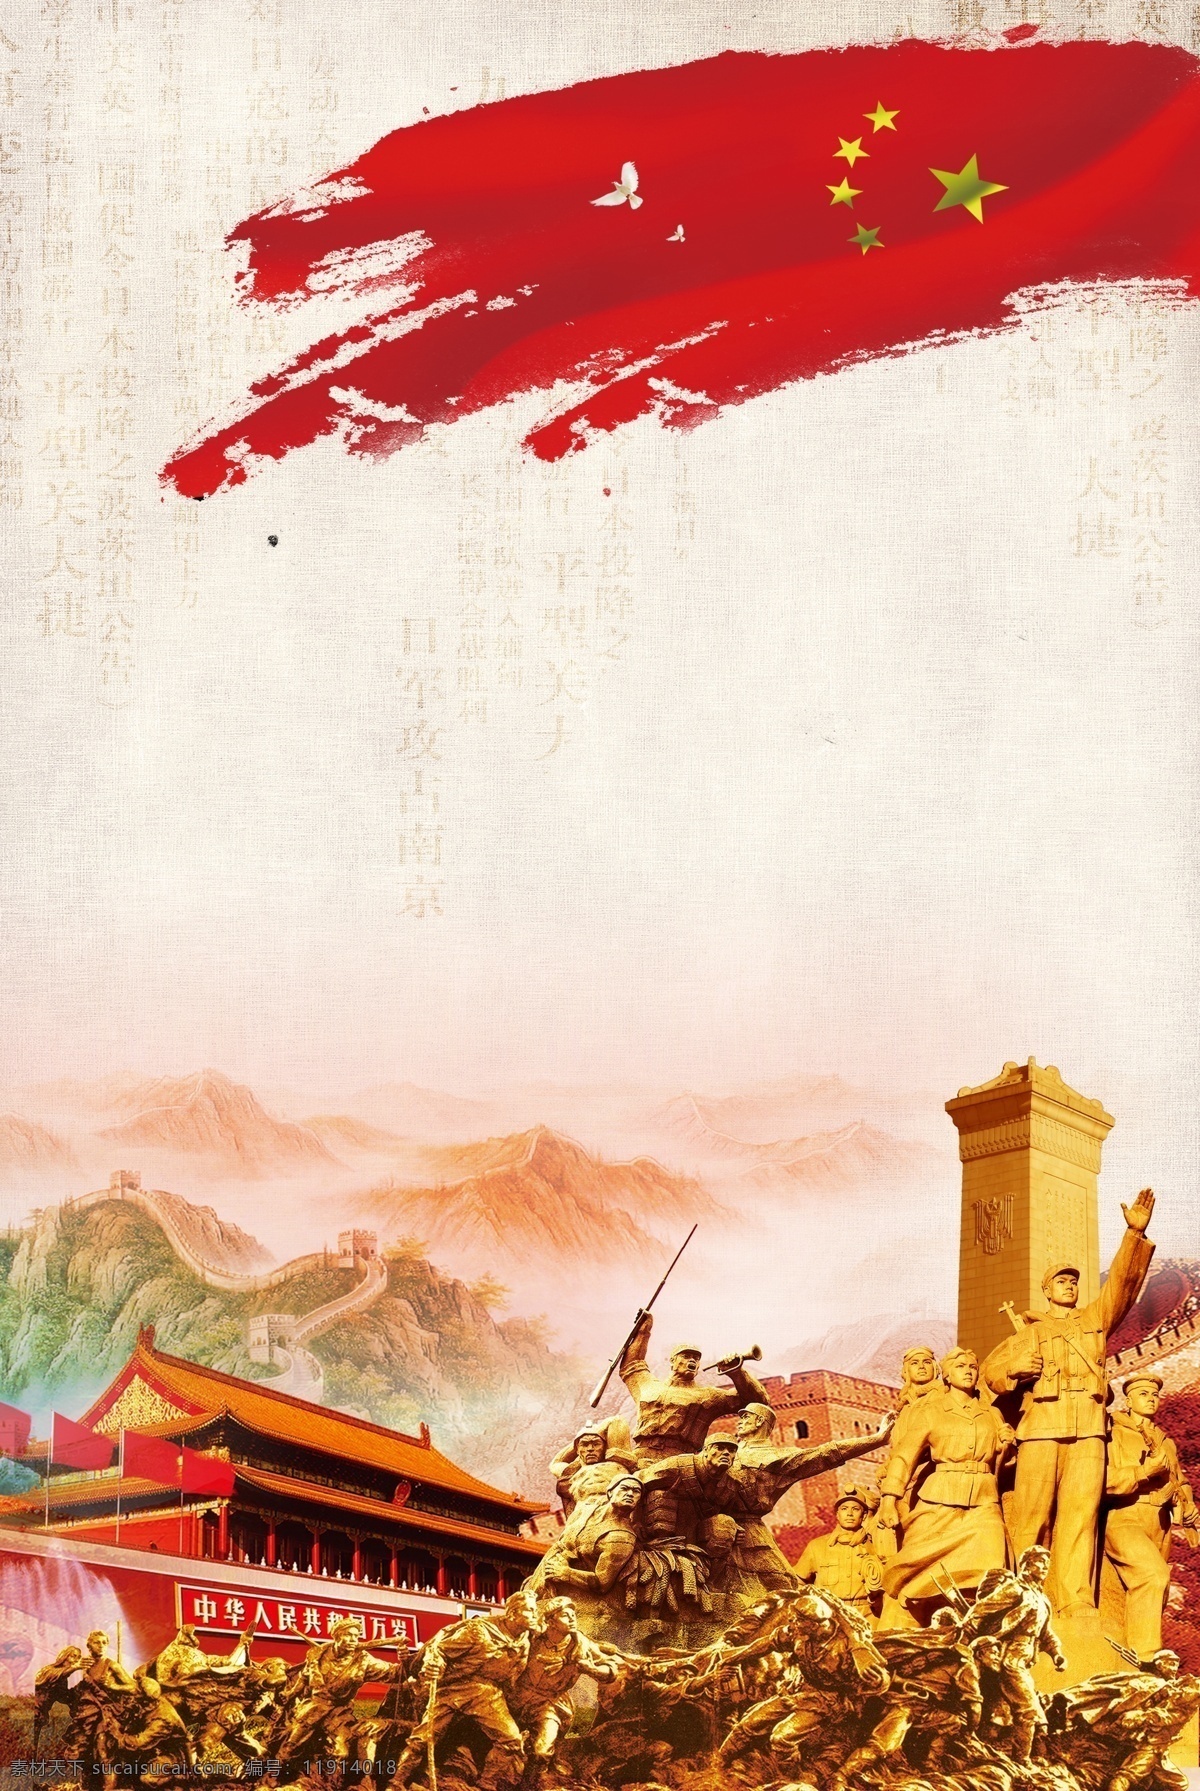 抗日战争 胜利 周年 海报 抗日 战争 73周年 中国红 歌名 胜利纪念 红旗 天安门 万里长城 纪念碑 革命战士